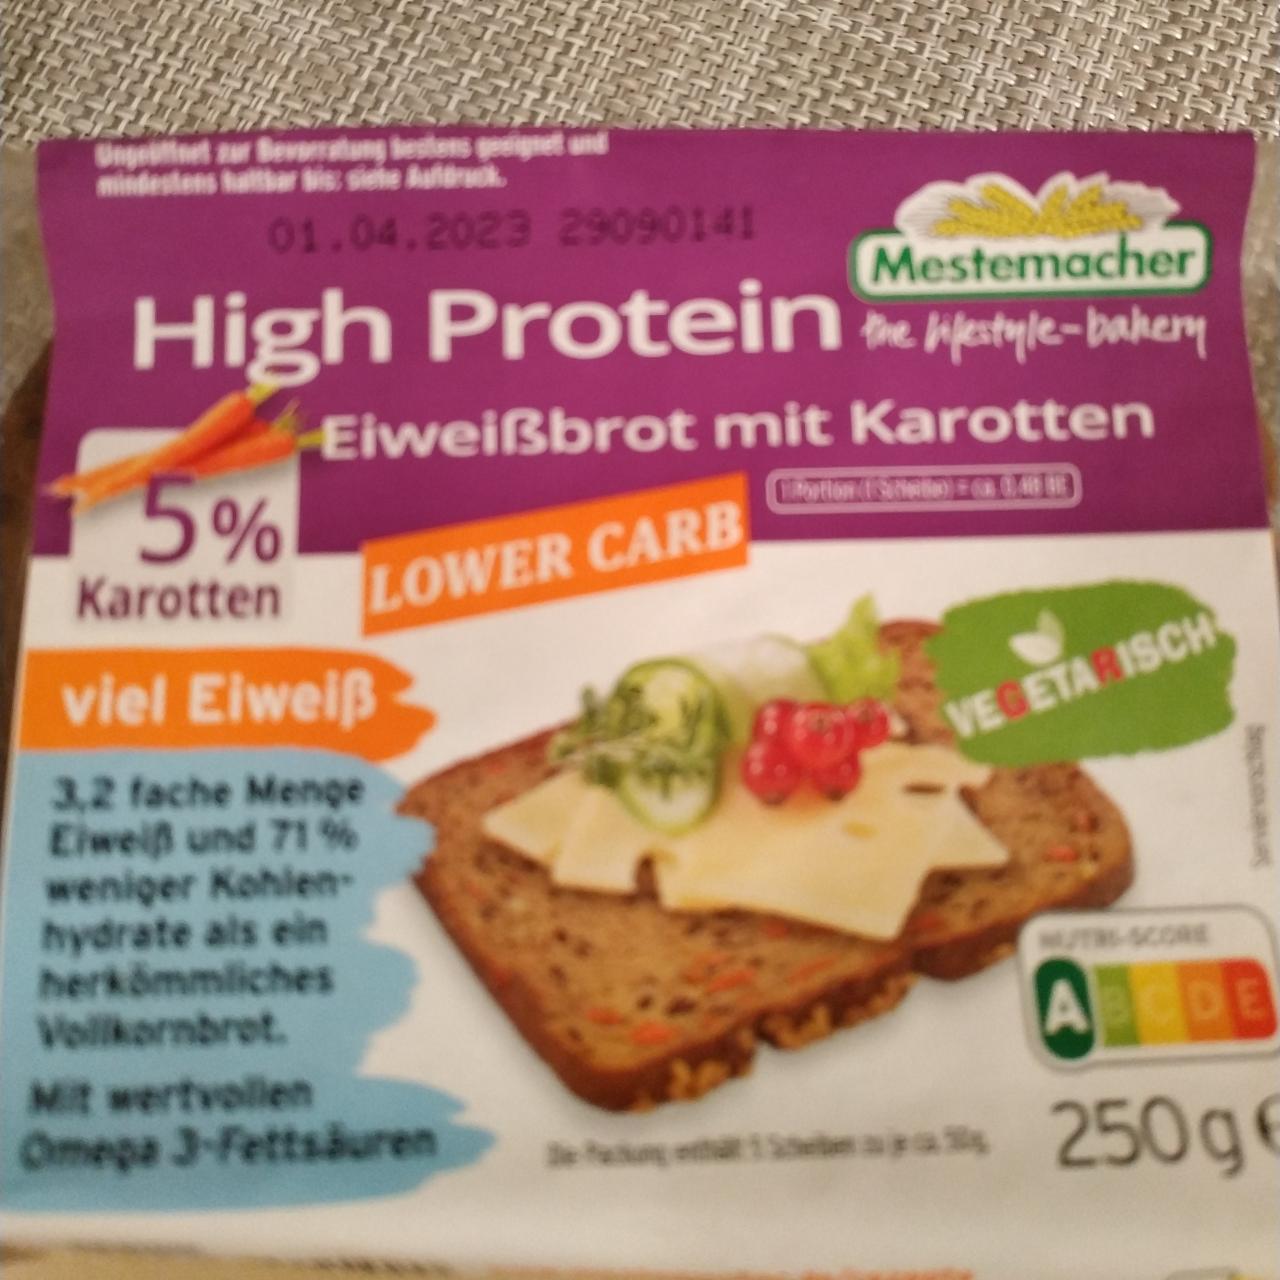 Фото - Хлеб с повышенным содержанием протеина High Protein Mestemacher